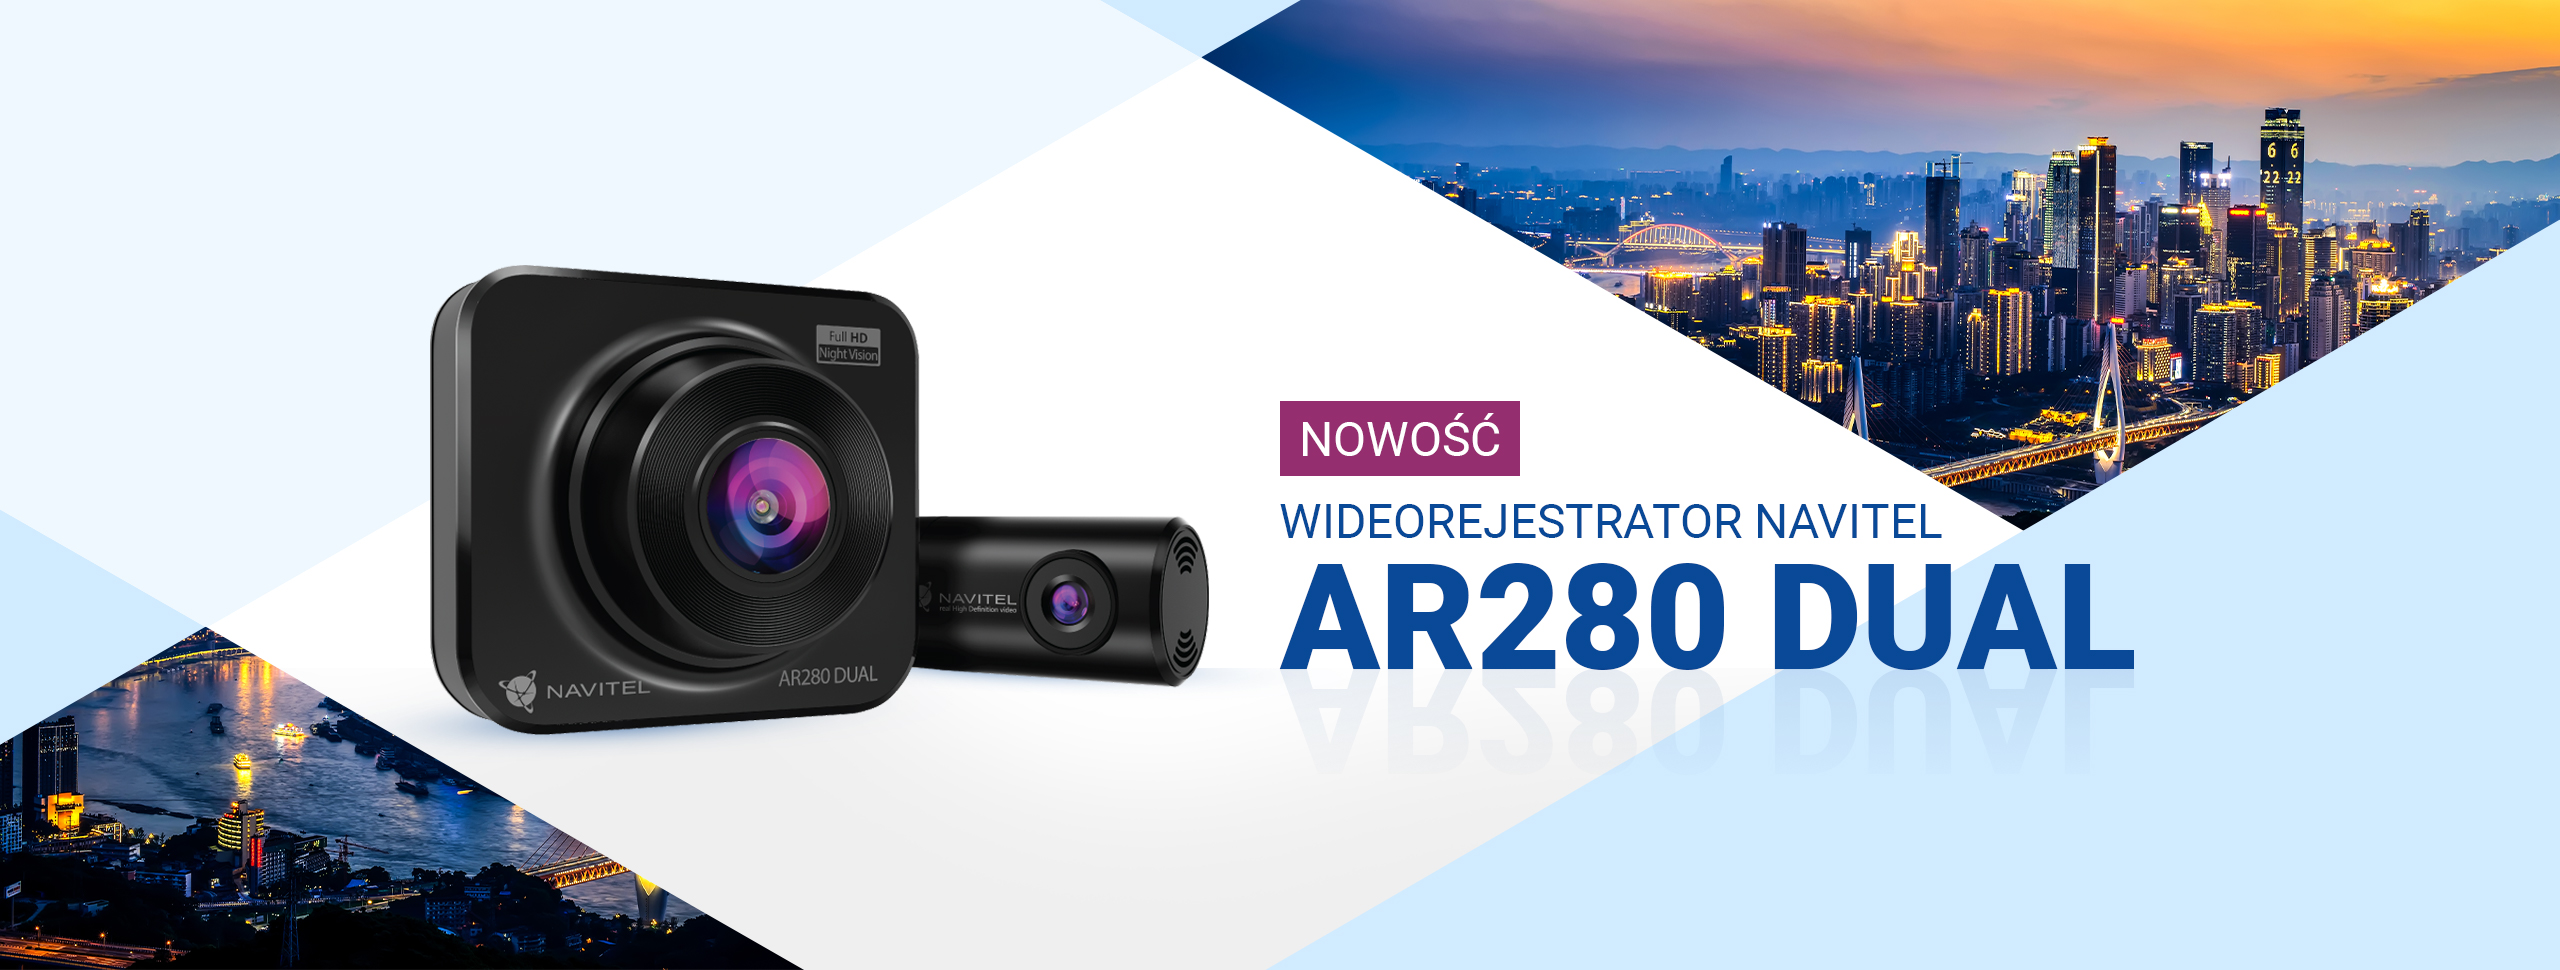 Wideorejestrator NAVITEL AR280 DUAL z sensorem night vision i tylną kamerą